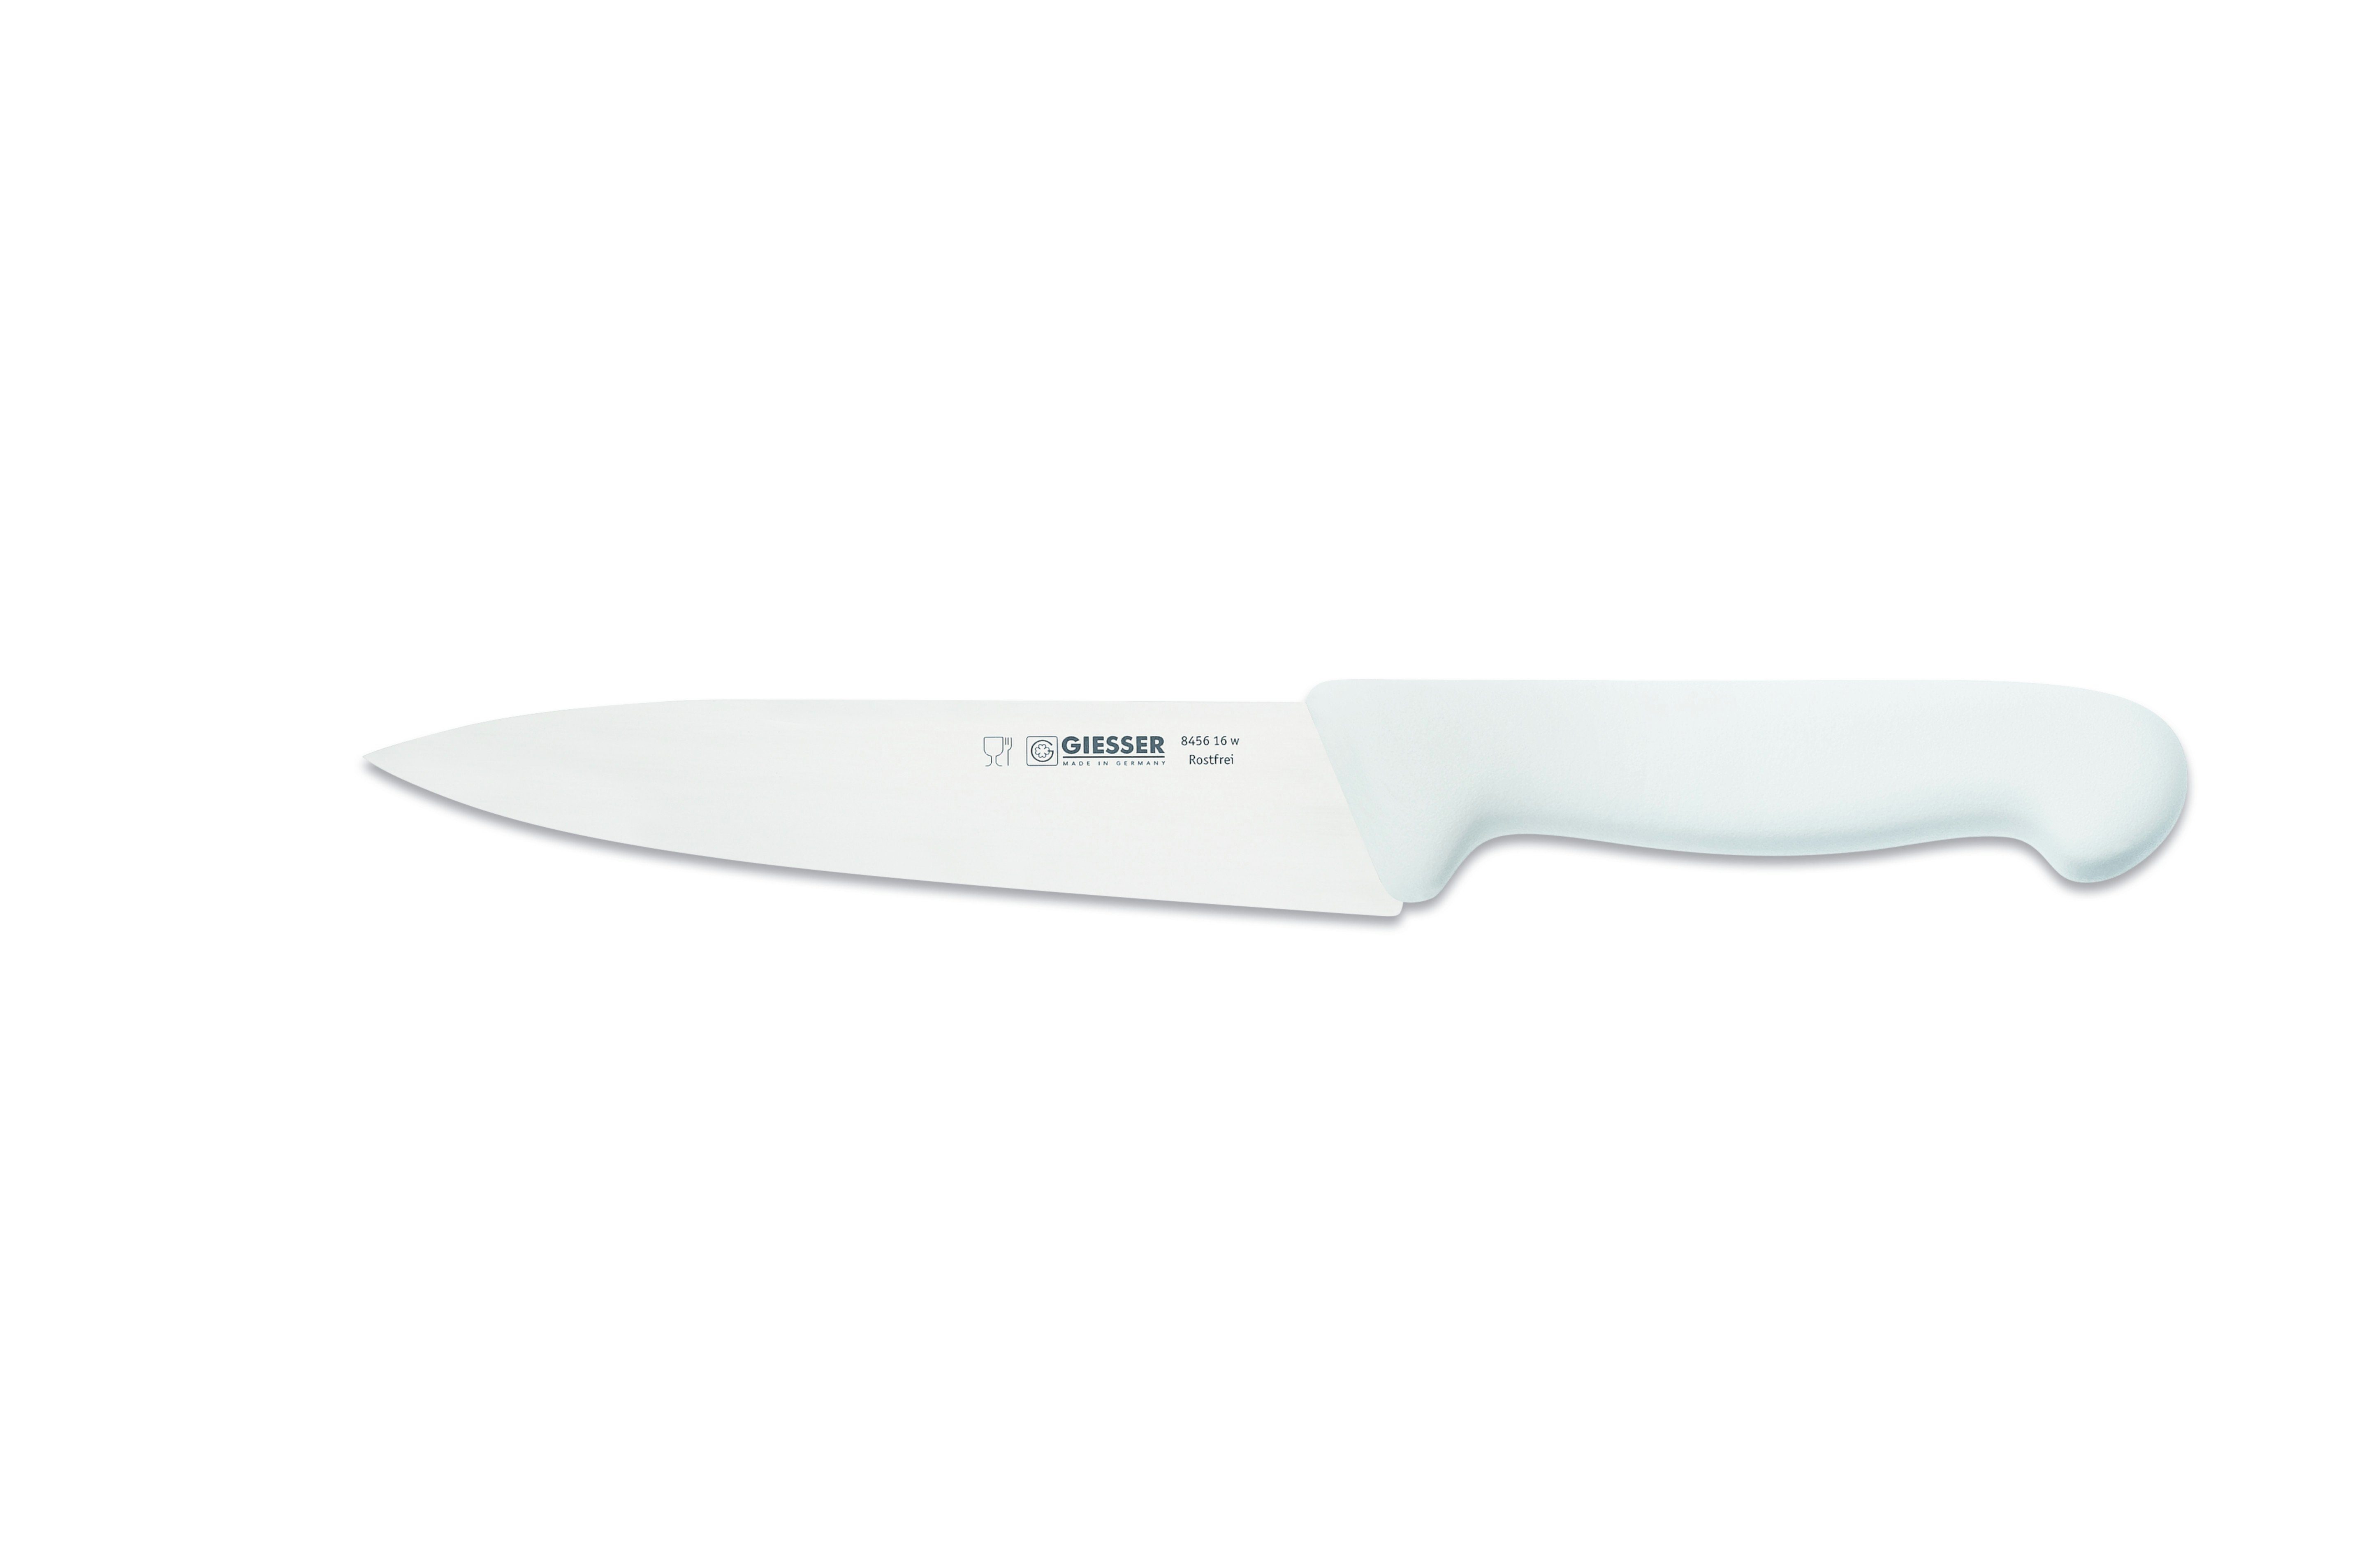 Giesser Messer Kochmesser Küchenmesser 8456, schmale, mittelspitze Klinge, scharf Handabzug, Ideal für jede Küche weiß